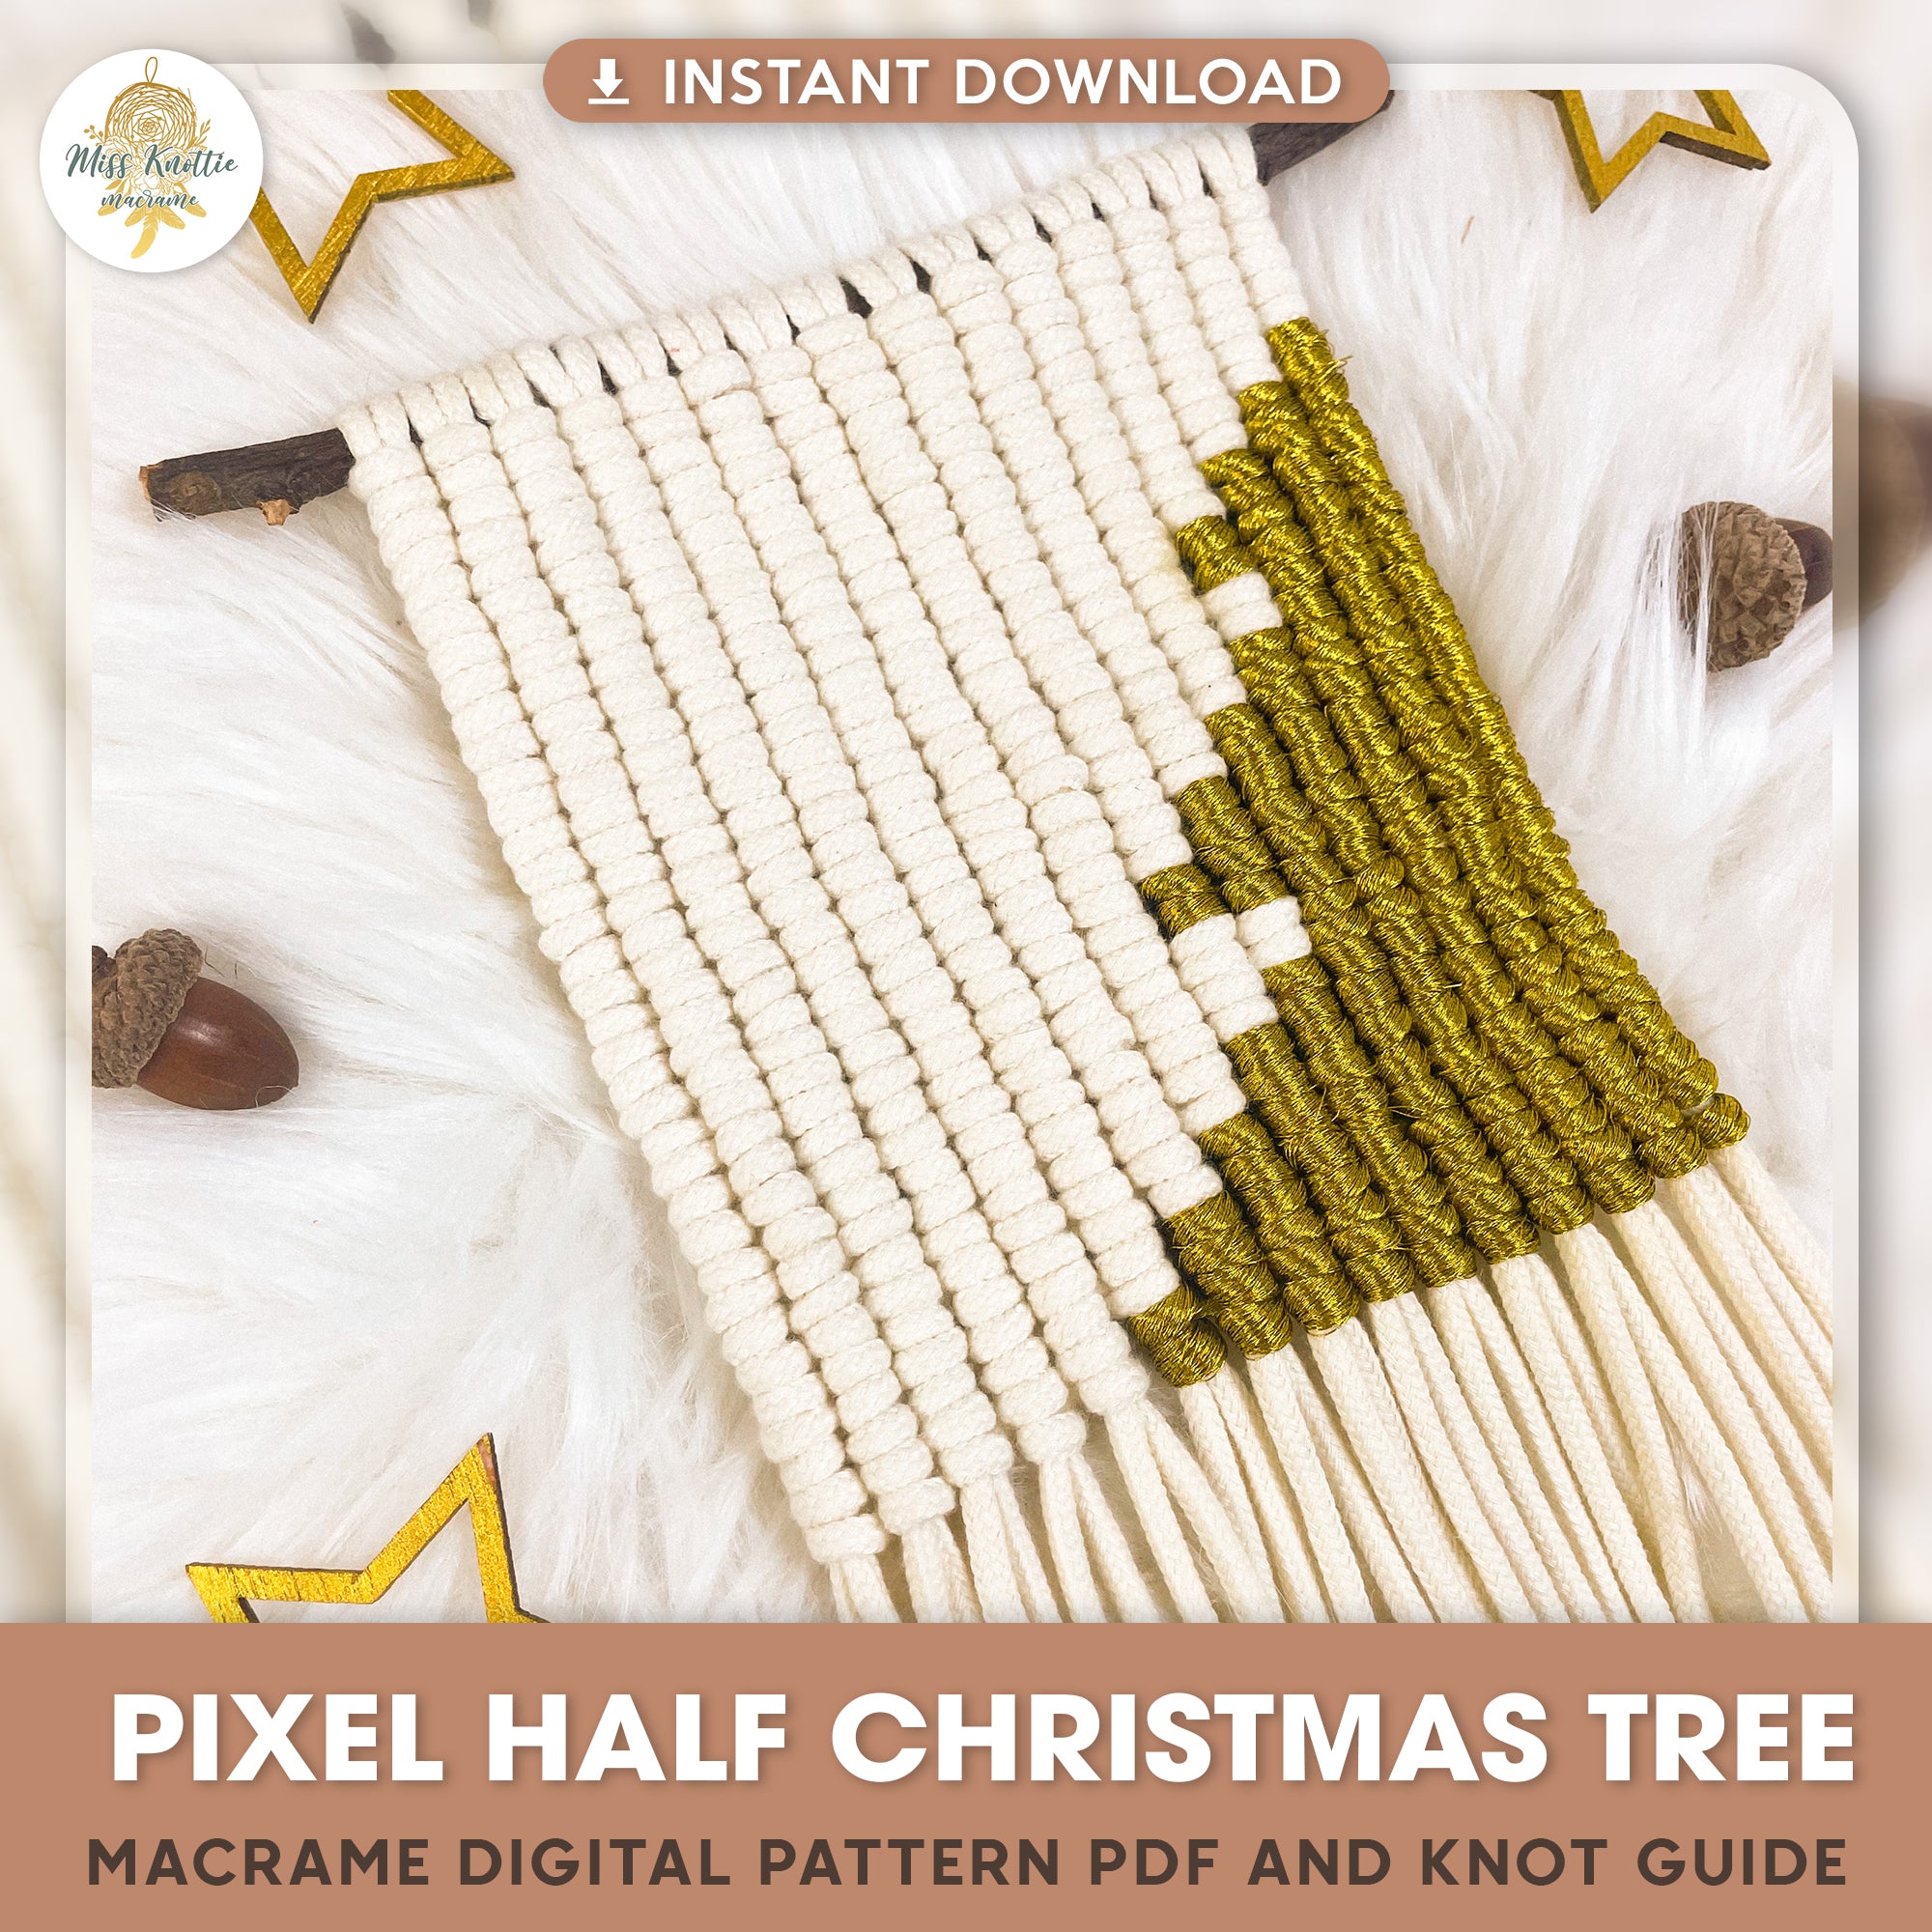 Padrão de pixels da árvore de meio Natal - PDF digital e guia de nós